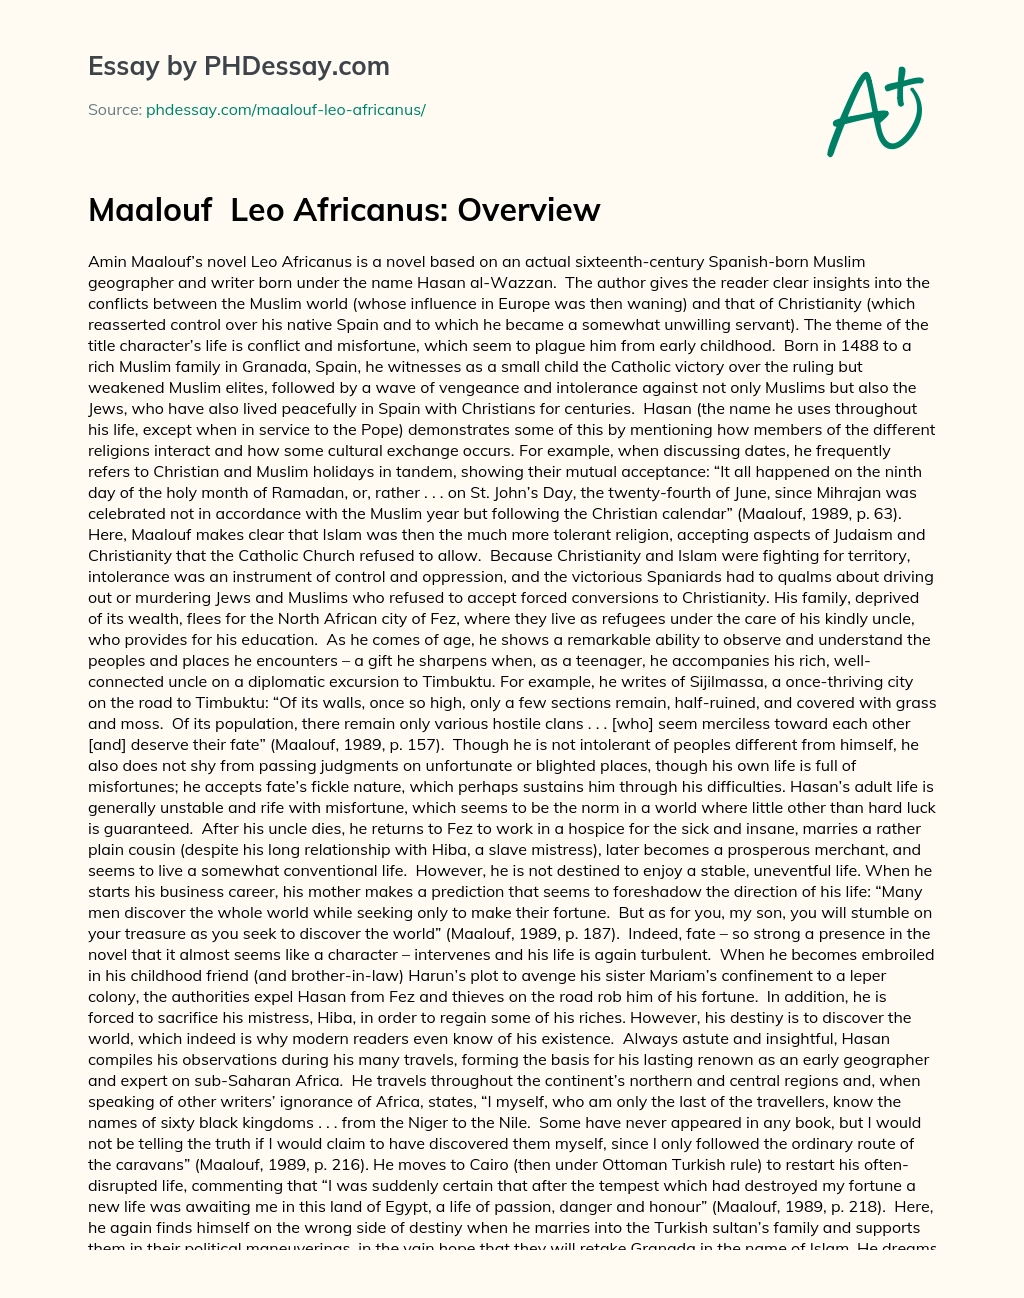 Maalouf  Leo Africanus: Overview essay